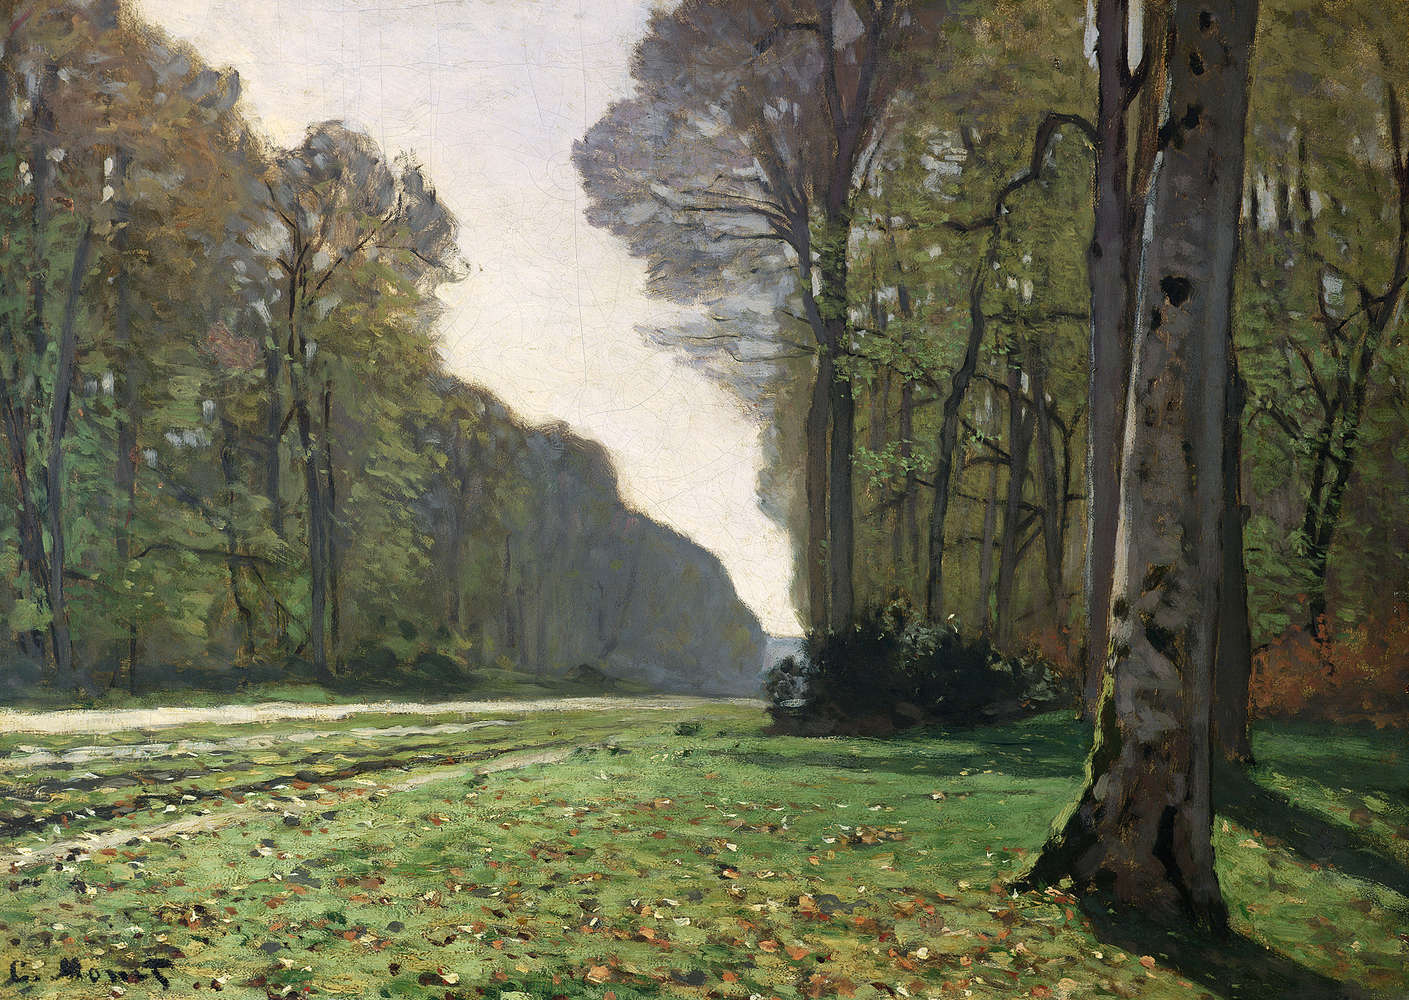             Muurschildering "De weg naar BasBreauFontainebleau" van Claude Monet
        